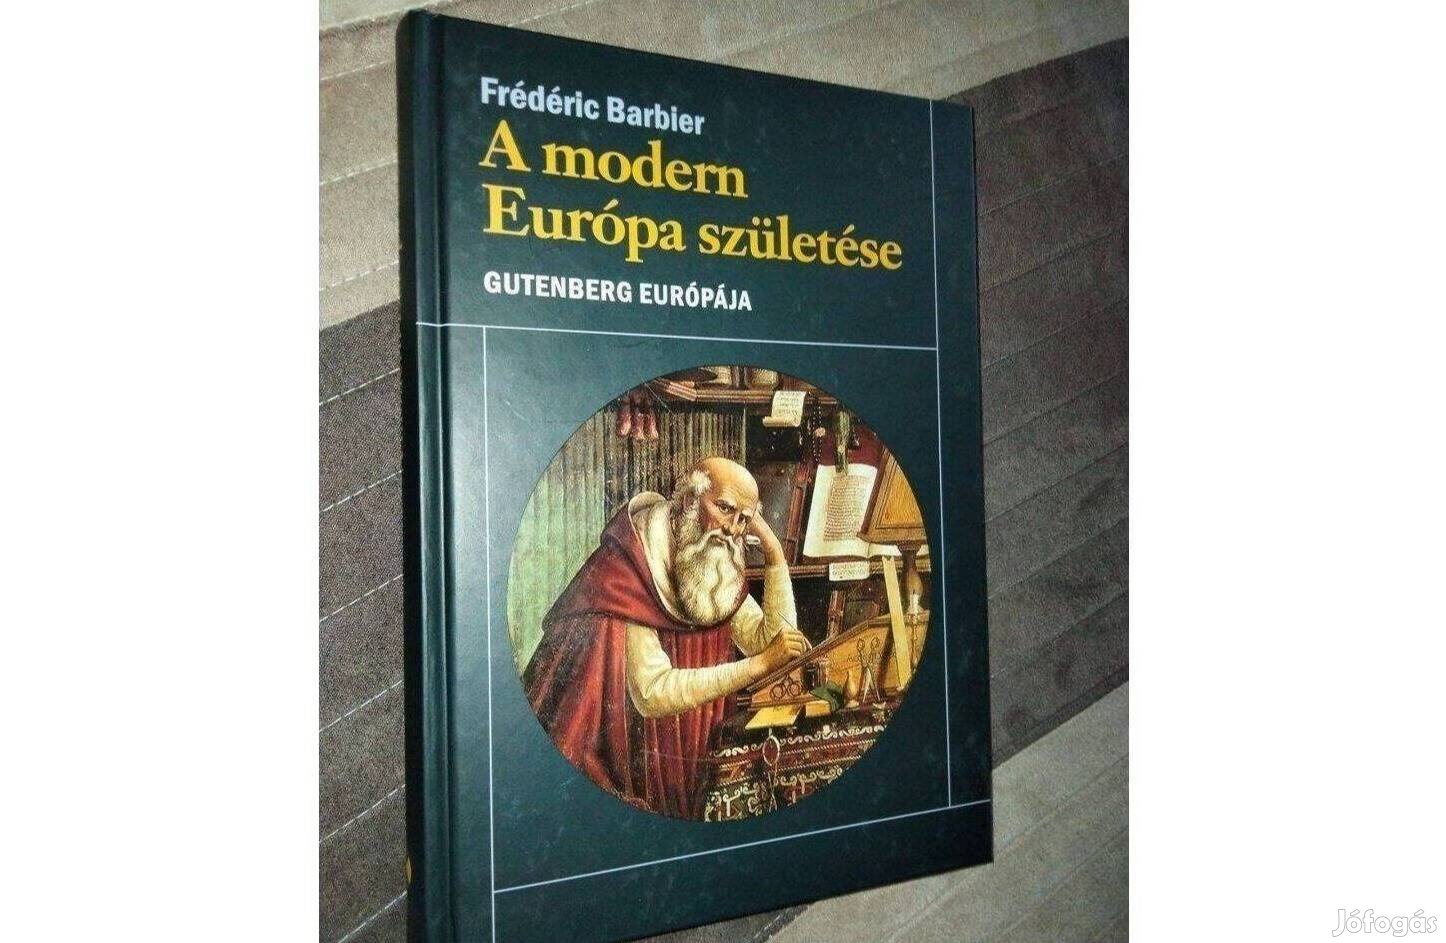 Frédéric Barbier : A modern Európa születése - Gutenberg Európája